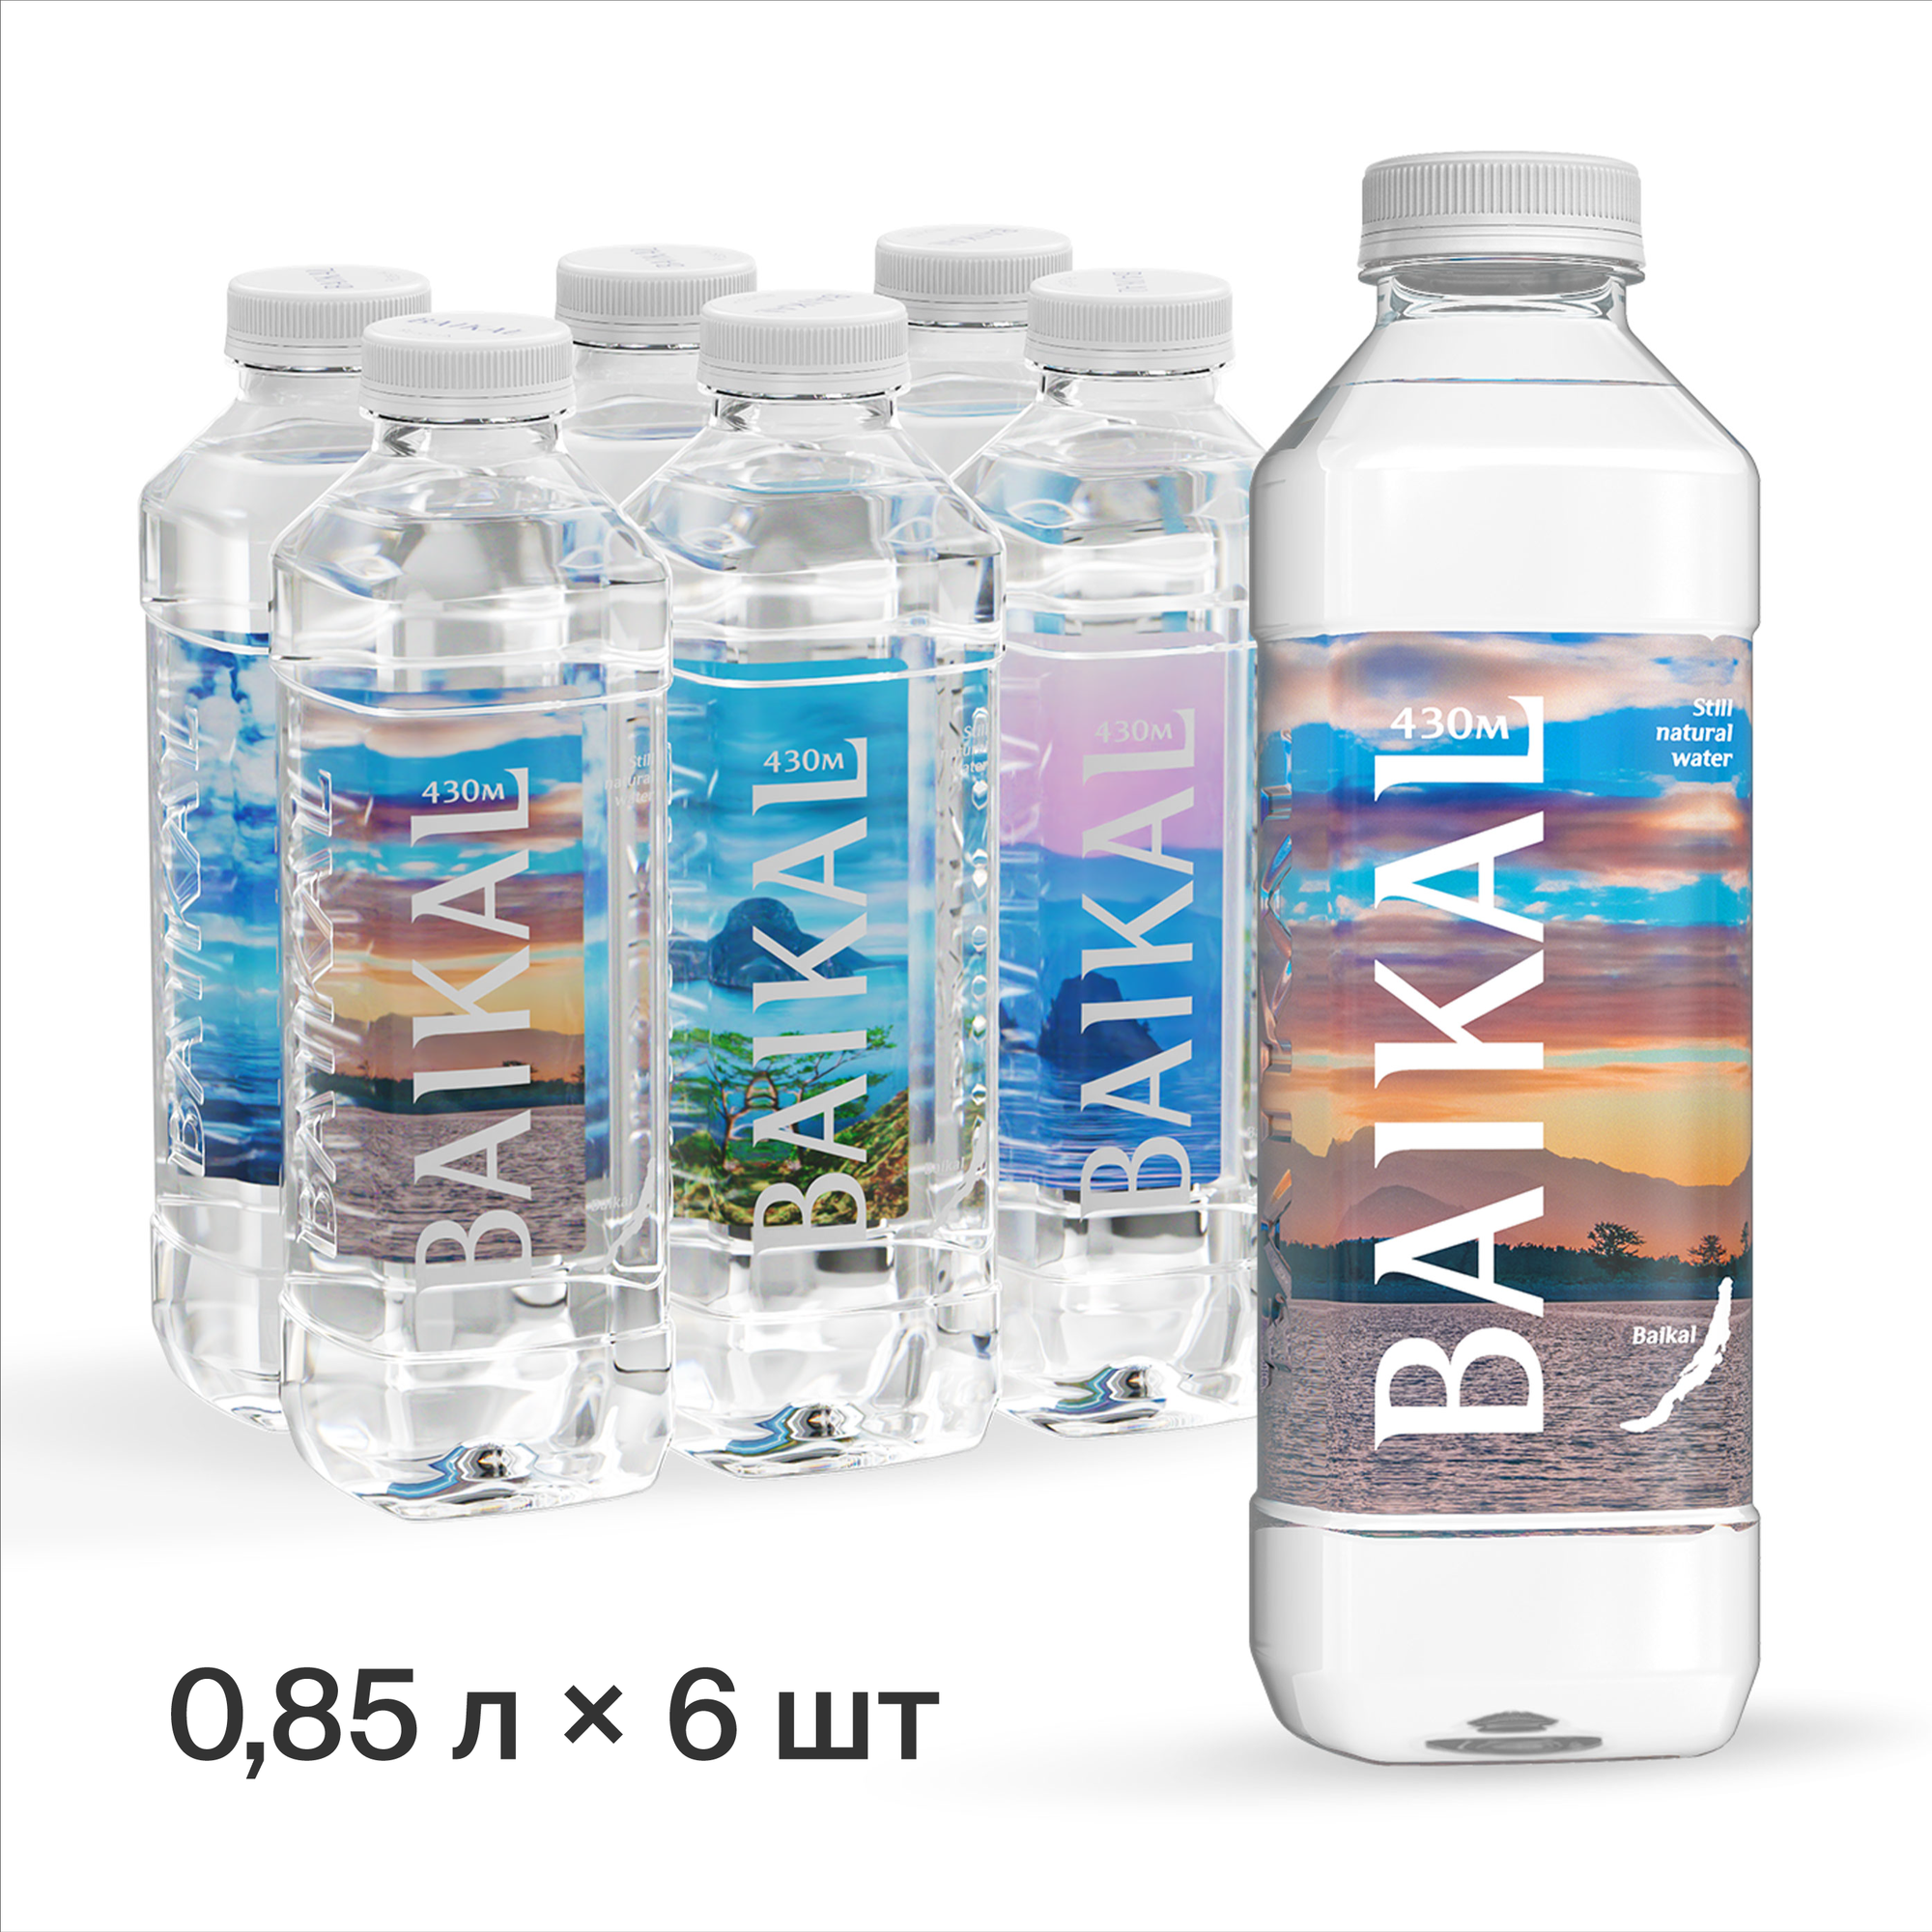 Глубинная байкальская вода BAIKAL430 0,85 литра, ПЭТ, (6 шт. в упаковке)